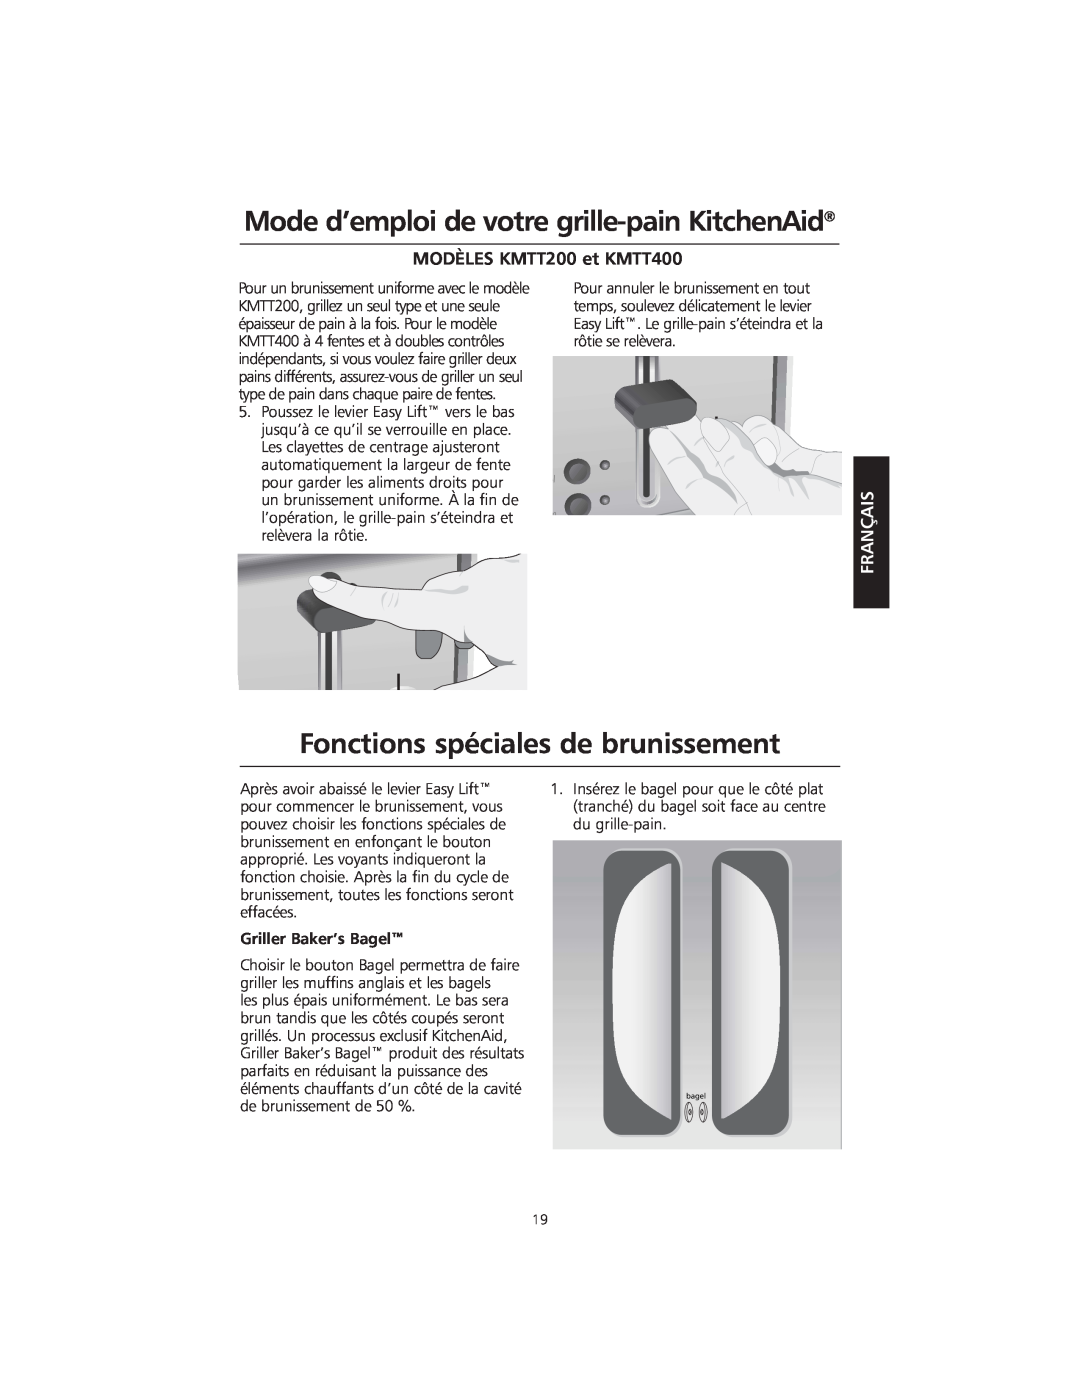 KitchenAid KMTT400 manual Fonctions spéciales de brunissement, Mode d’emploi de votre grille-painKitchenAid, Français 